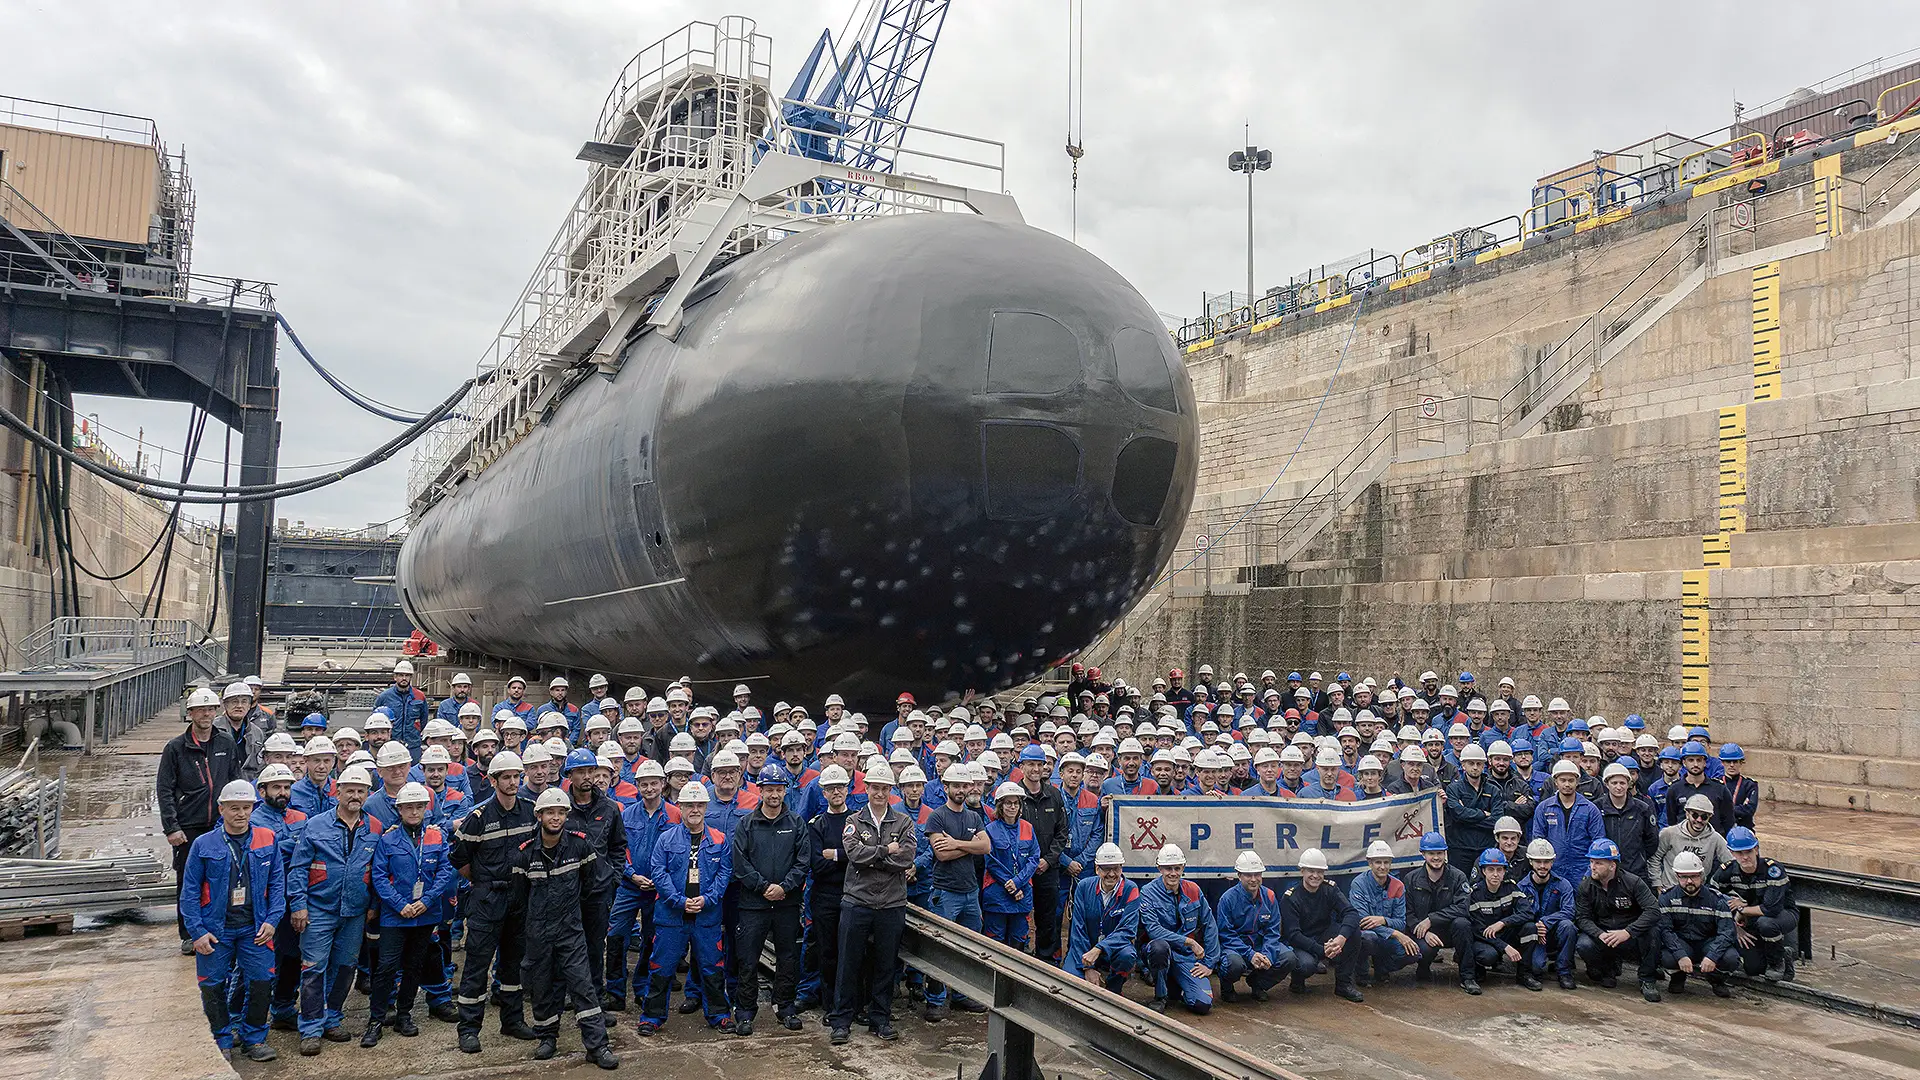 Naval Group przeprowadziła pierwszą w historii modernizację okrętu podwodnego o napędzie atomowym, wykorzystując część innego okrętu podwodnego tej samej klasy.